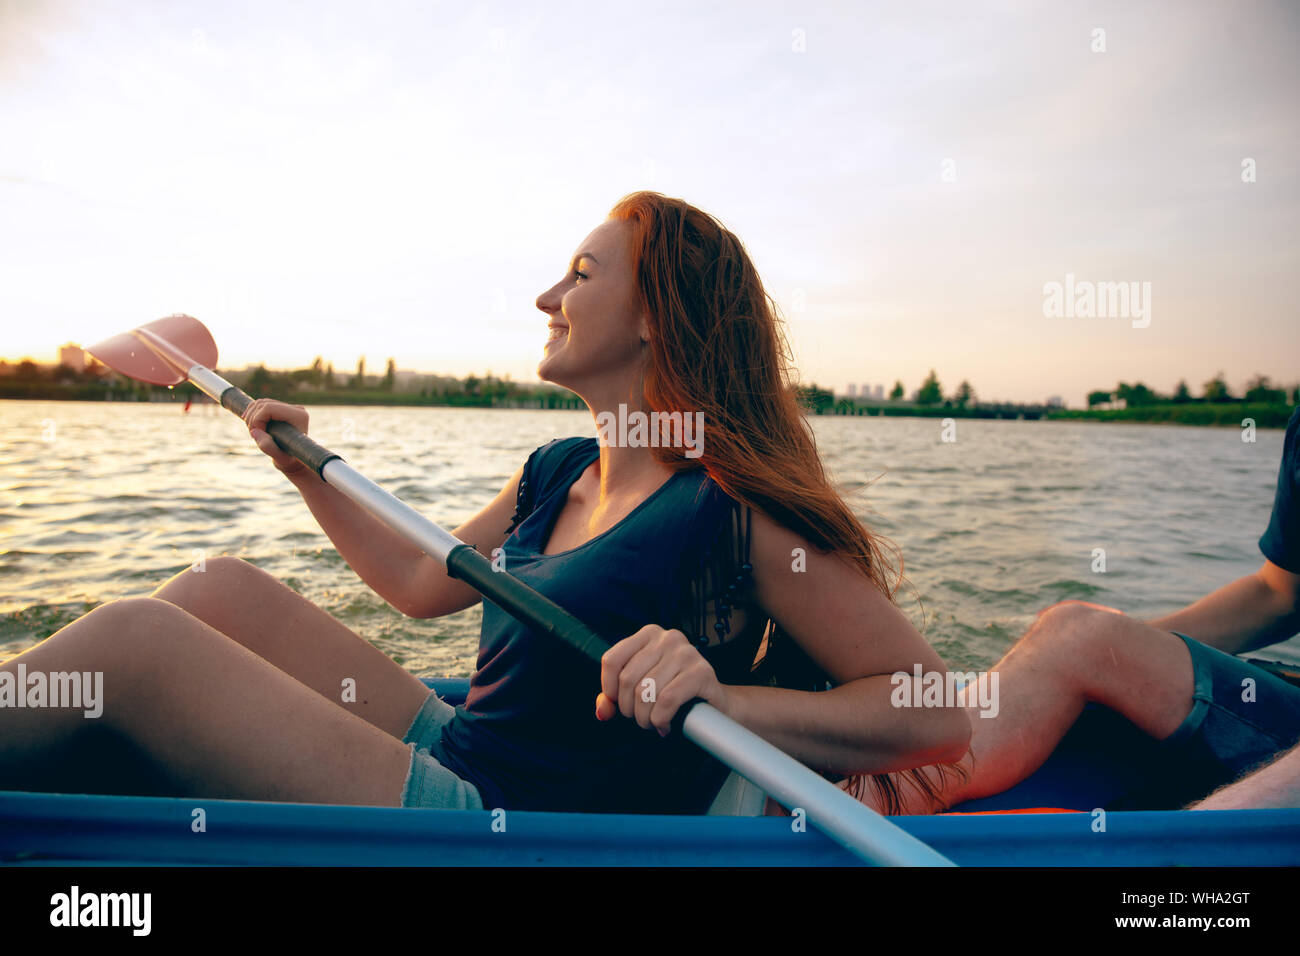 Selbstbewussten jungen kaukasischen Frau Kajakfahren auf dem Fluss mit Sonnenuntergang im Hintergrund. Spaß in der Freizeit. Gerne Haar weiblichen Modell auf dem Kajak. Sport, Beziehungen Konzept. Stockfoto